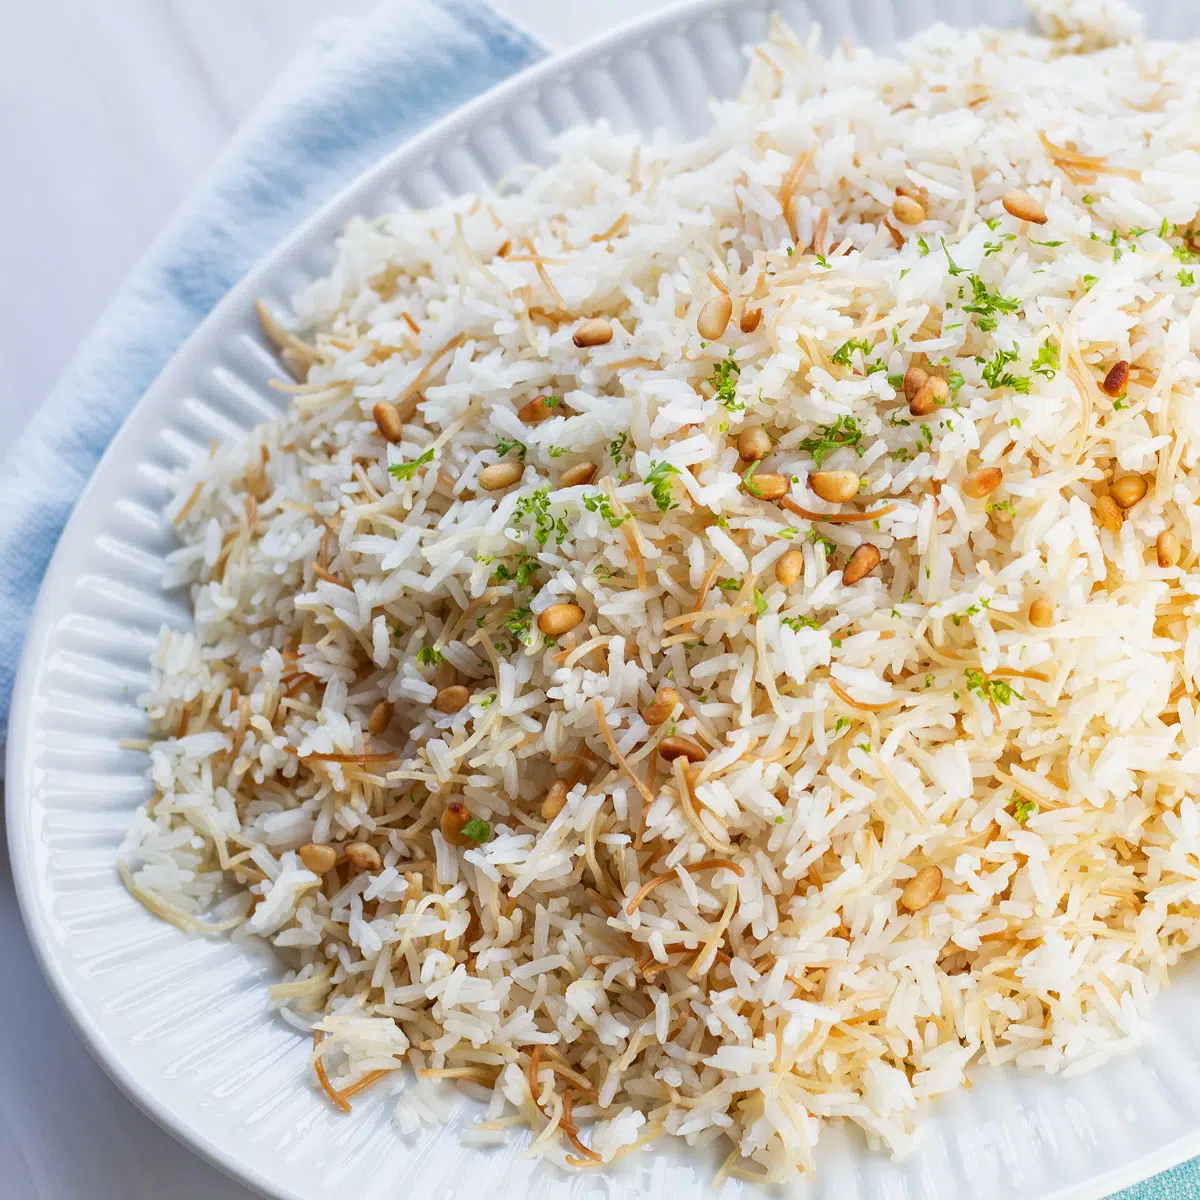 أرز الشعيرية الجميل والرائحة يقدم على طبق أبيض كبير.